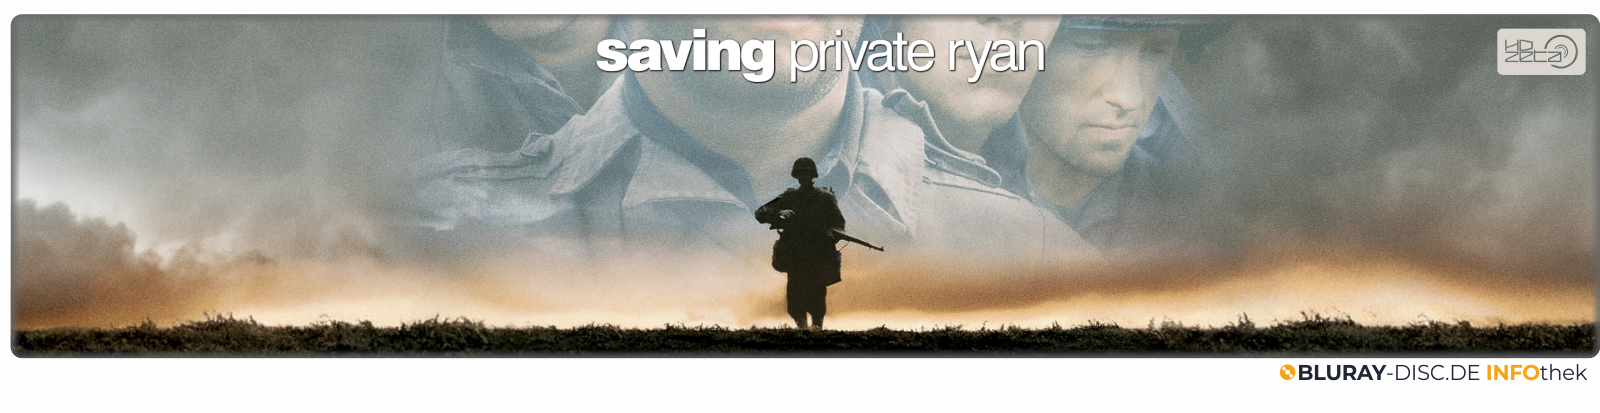 Moviebanner_HDzeta_Saving_Private_Ryan.png